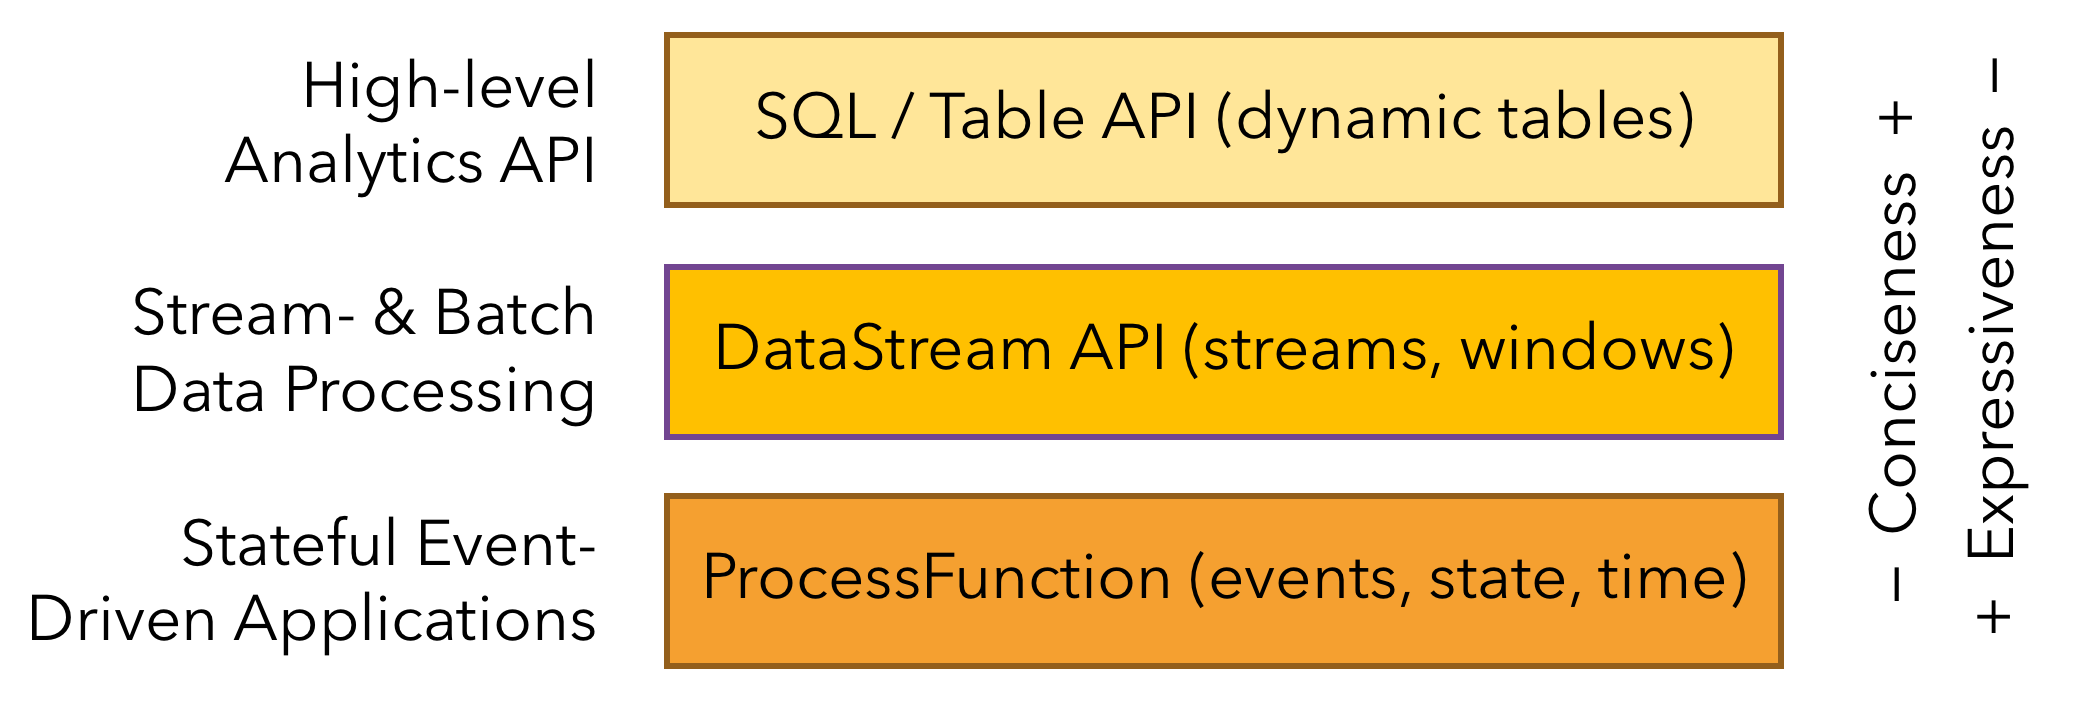 怎样使用Apache Flink中表的SQL APIx”> </p> <p>最低层是一个有状态的事件驱动。在这一层进行开发是非常麻烦的。</p> <p>虽然很多功能基于数据集和DataStreamAPI是可以完成的,需要熟悉这两套API,而且必须要熟悉Java和Scala,这是有一定的难度的。一个框架如果在使用的过程中没法使用SQL来处理,那么这个框架就有很大的限制,虽然对于开发人员无所谓,但是对于用户来说却不显示。因此SQL是非常面向大众语言。</p> <p>好比MapReduce使用蜂巢SQL,火花使用火花SQL, Flink使用Flink SQL。</p> <p>虽然Flink支持批处理/流处理,那么如何做到API层面的统一? </p> <p>这样表和SQL应运而生。</p> <p>这其实就是一个关系型API,操作起来如同操作Mysql一样简单。</p> <blockquote> <p> Apache Flink特性两个关系表API和SQL API————统一的流和批处理。表为Scala API是一个综合语言查询API和Java允许查询的组合关系运算符如选择,过滤器,并加入在一个非常直观的方式只</p> </引用> <p> Apache Flink通过使用表和SQL API两大特性,来统一批处理和流处理只表API是一个查询API,集成了Scala和Java语言,并且允许使用选择滤波器加入等操作。</p> <p>使用表的SQL API需要额外依赖Java: </p> <p> </p> <>之前,,,,,,,,& lt; dependency>
　　,,,,,,,,,,,& lt; groupId> org.apache.flink</groupId>
　　,,,,,,,,,,,& lt; artifactId> flink-streaming-scala_2.11</artifactId>
　　,,,,,,,,,,,& lt; version> $ {flink.version} & lt;/version>
　　,,,,,,,& lt;/dependency>
　　,,,,,,,& lt; dependency>
　　,,,,,,,,,,,& lt; groupId> org.apache.flink</groupId>
　　,,,,,,,,,,,& lt; artifactId> flink-table-planner_2.11</artifactId>
　　,,,,,,,,,,,& lt; version> $ {flink.version} & lt;/version>
　　,,,,,,,& lt;/dependency>
　　,,,,,,,& lt; dependency>
　　,,,,,,,,,,,& lt; groupId> org.apache.flink</groupId>
　　,,,,,,,,,,,& lt; artifactId> flink-table-api-java-bridge_2.11</artifactId>
　　,,,,,,,,,,,& lt; version> $ {flink.version} & lt;/version>
　　,,,,,,,& lt;/dependency> scala: </pre> <p> </p> <>之前,,,,,,,,& lt; dependency>
　　,,,,,,,,,,,& lt; groupId> org.apache.flink</groupId>
　　,,,,,,,,,,,& lt; artifactId> flink-table-planner_2.11</artifactId>
　　,,,,,,,,,,,& lt; version> $ {flink.version} & lt;/version>
　　,,,,,,,& lt;/dependency>
　　,,,,,,,& lt; dependency>
　　,,,,,,,,,,,& lt; groupId> org.apache.flink</groupId>
　　,,,,,,,,,,,& lt; artifactId> flink-table-api-scala-bridge_2.11</artifactId>
　　,,,,,,,,,,,& lt; version> $ {flink.version} & lt;/version>
　　,,,,,,,& lt;/dependency> </pre> <h3>使用表的SQL API编程</h3> <p>首先导入上面的依赖,然后读取sales.csv文件,文件内容如下:</p> <pre> transactionId, customerId, itemId amountPaid
　　111年,1100 0
　　112年,2505 0
　　113年,3510 0
　　114年,4600 0
　　115年,2500 0
　　116年,2500 0
　　117年,2500 0
　　118年,2500 0
　　119年,3500 0
　　120年,2500 0
　　121年,4500 0
　　122年,2500 0
　　123年,4500 0
　　124 1 2500 .0 Scala </pre> <h3> </h3> <pre> object  TableSQLAPI  {
　　
　　def 才能;主要(args:数组[String]):, Unit =, {
　　,,,val  bEnv =ExecutionEnvironment.getExecutionEnvironment
　　,,,val  bTableEnv =, BatchTableEnvironment.create (bEnv)
　　,,,val  filePath=癊:/测试/sales.csv